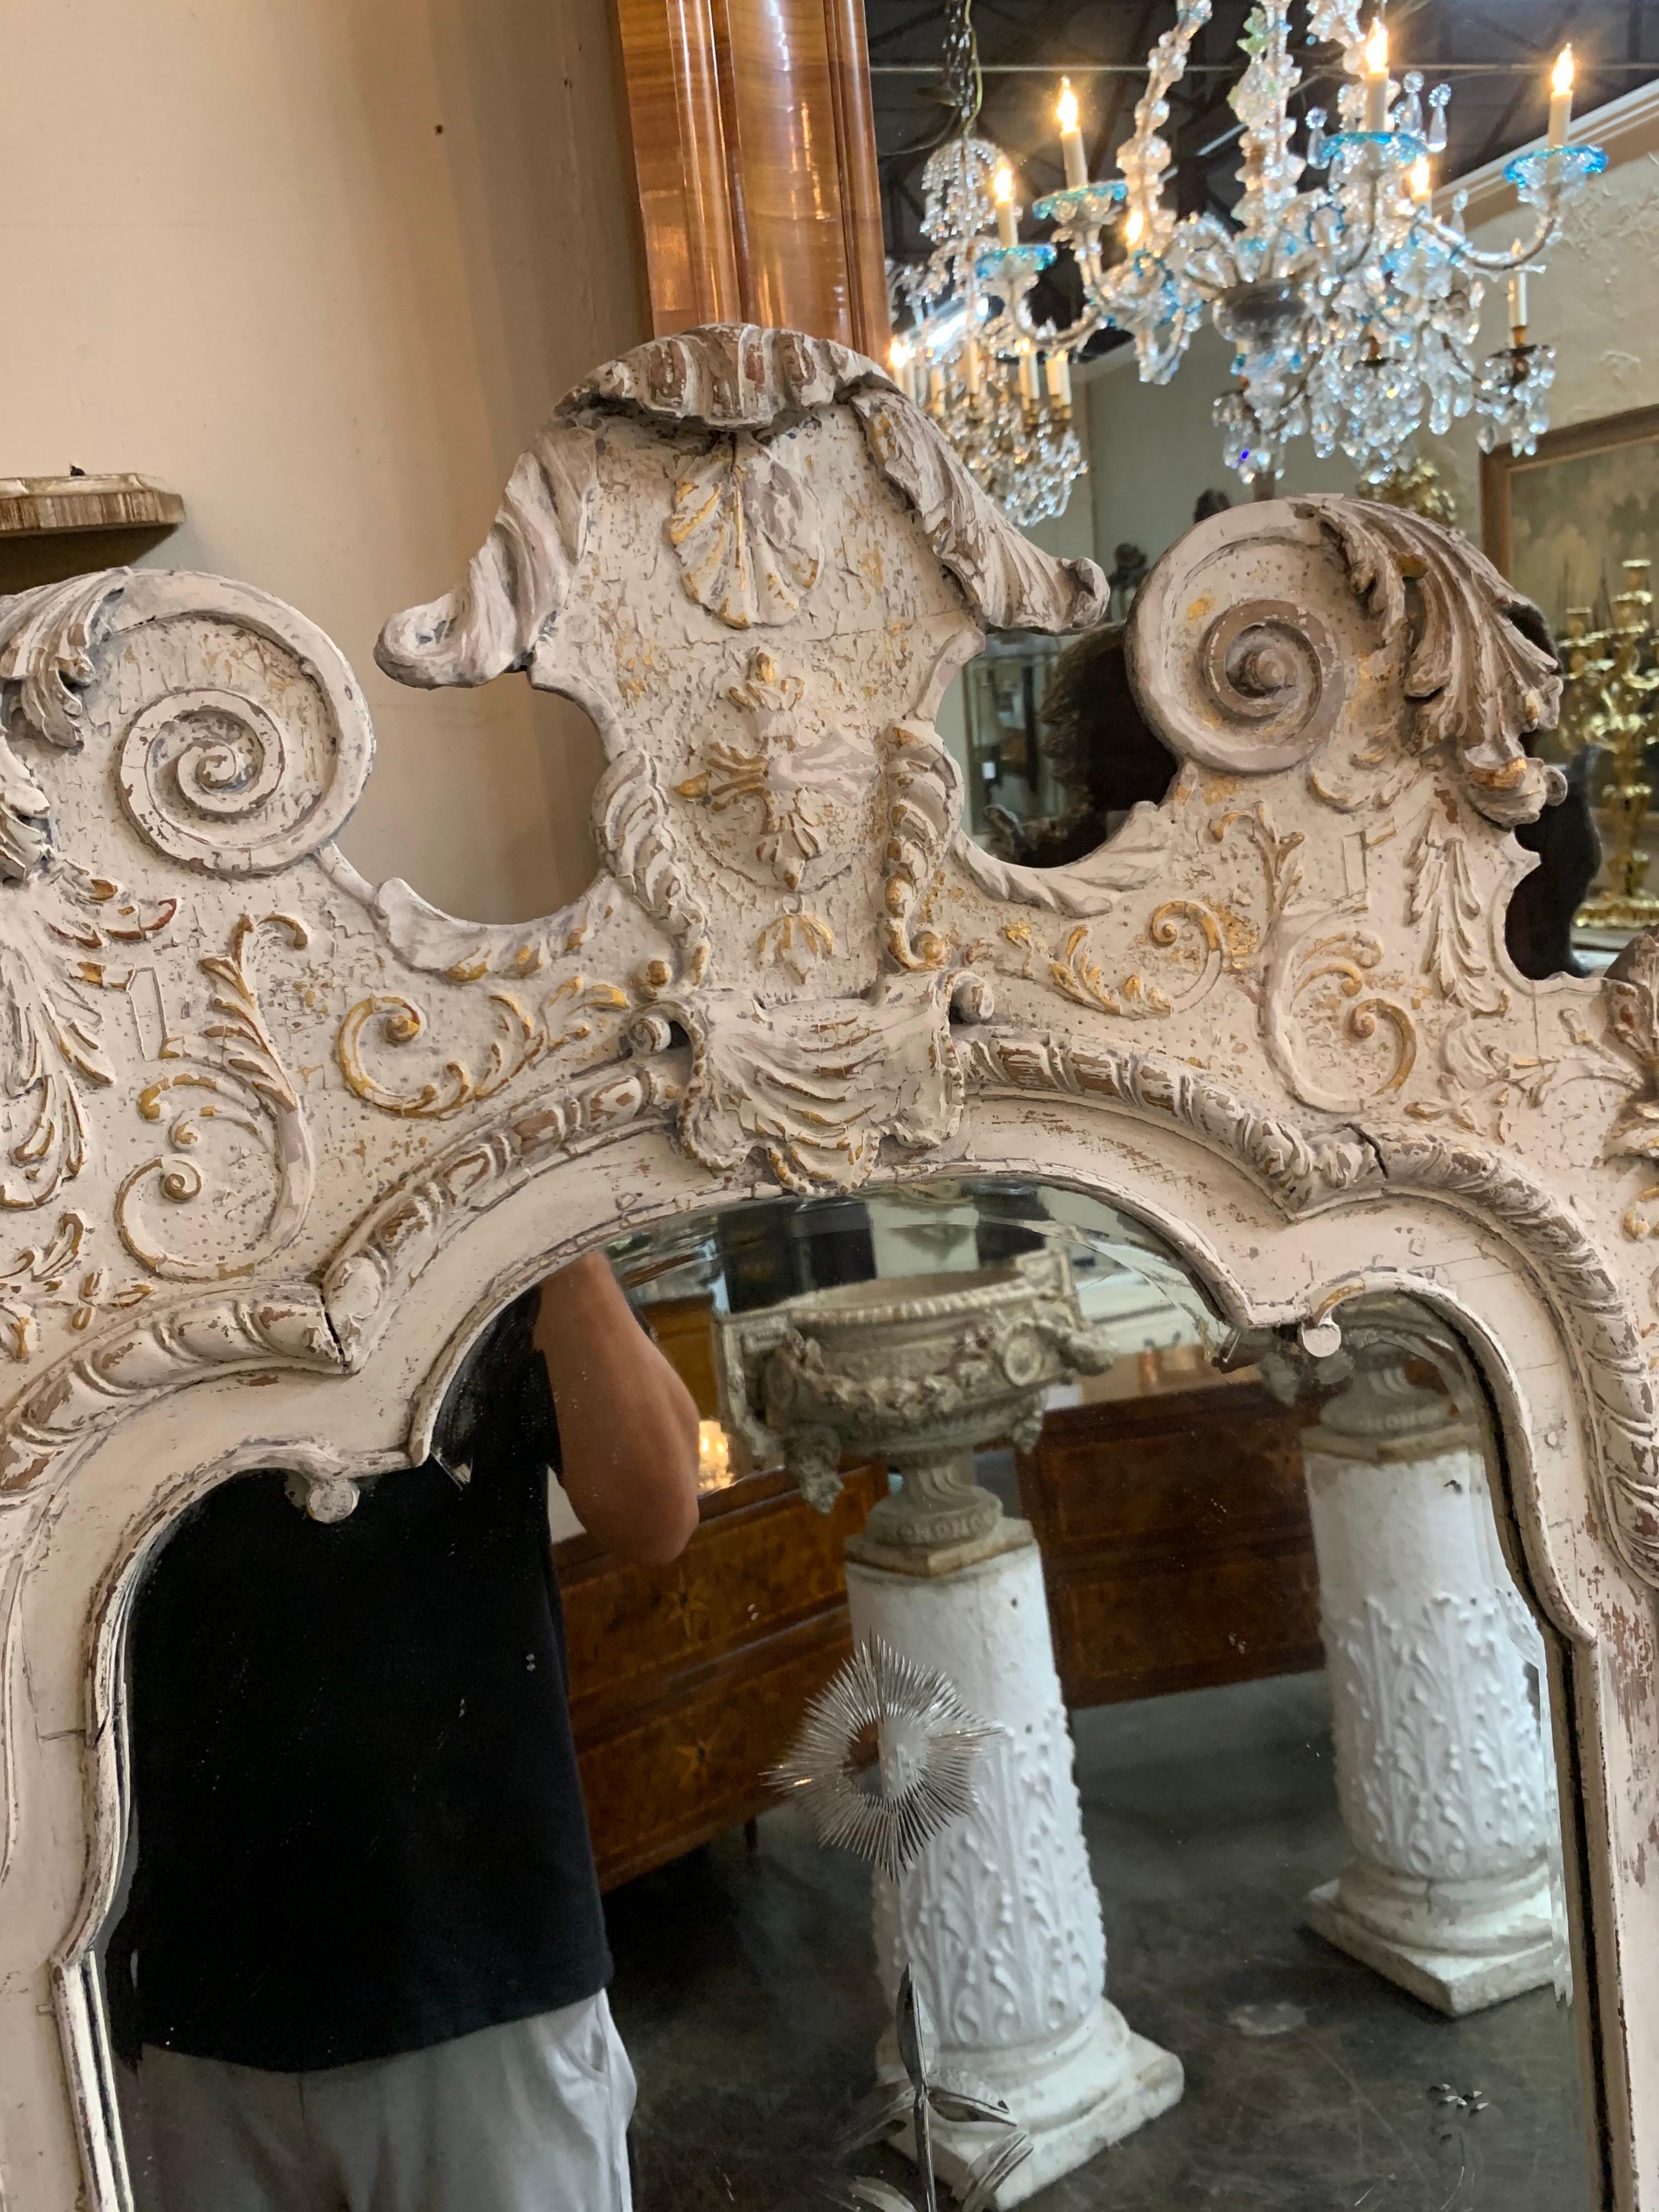 Magnifique paire de miroirs d'époque Régence anglaise sculptés et peints avec verre divisé d'origine. De belles sculptures et une belle patine sur ceux-ci. Exquis ! Note : Le prix indiqué est par article.